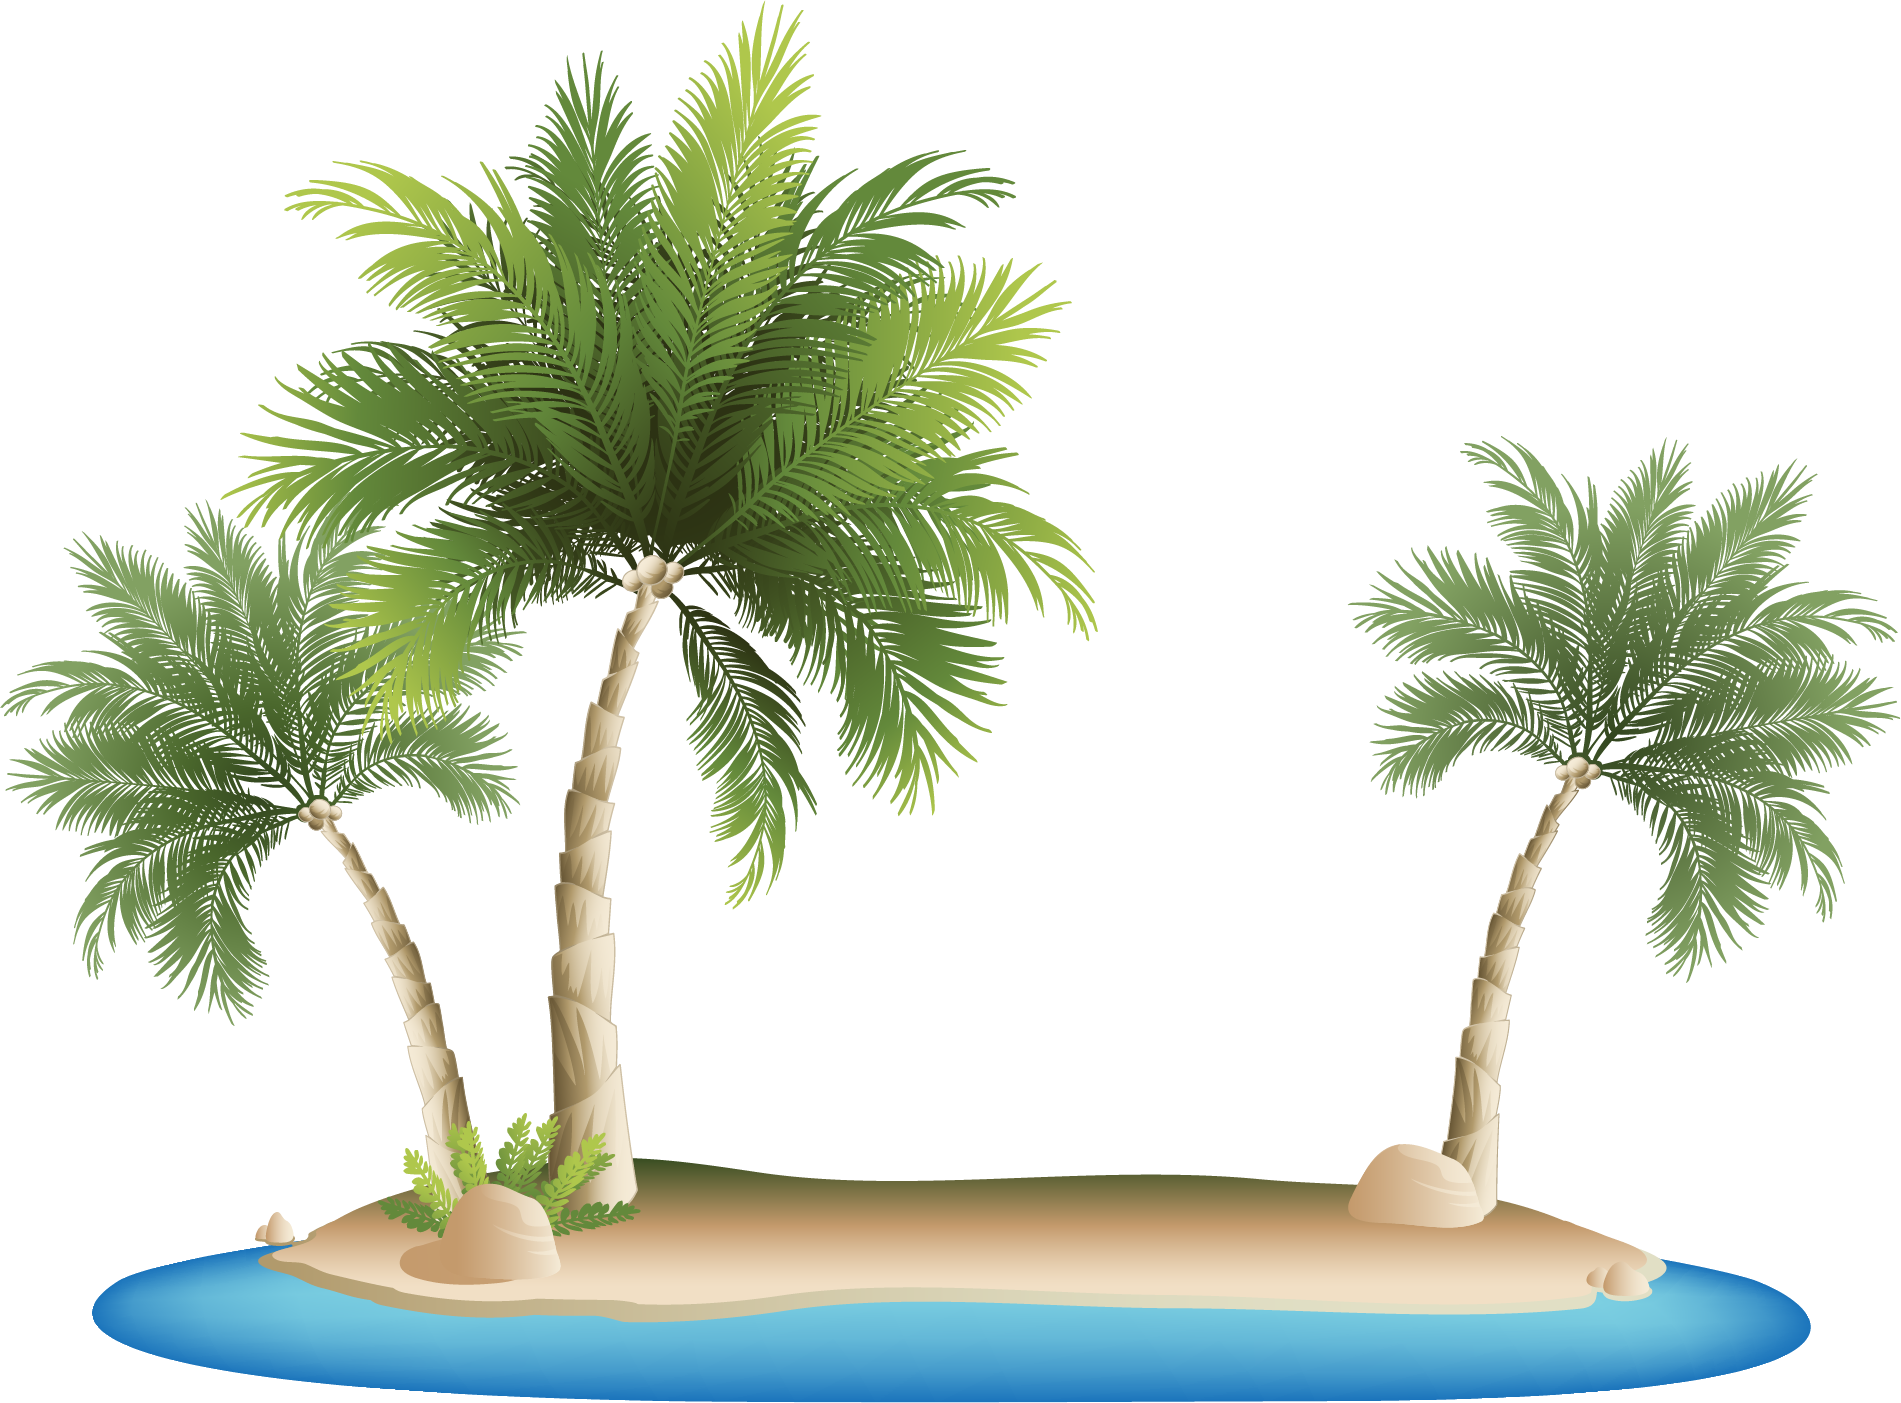 A Palm Trees On An Island